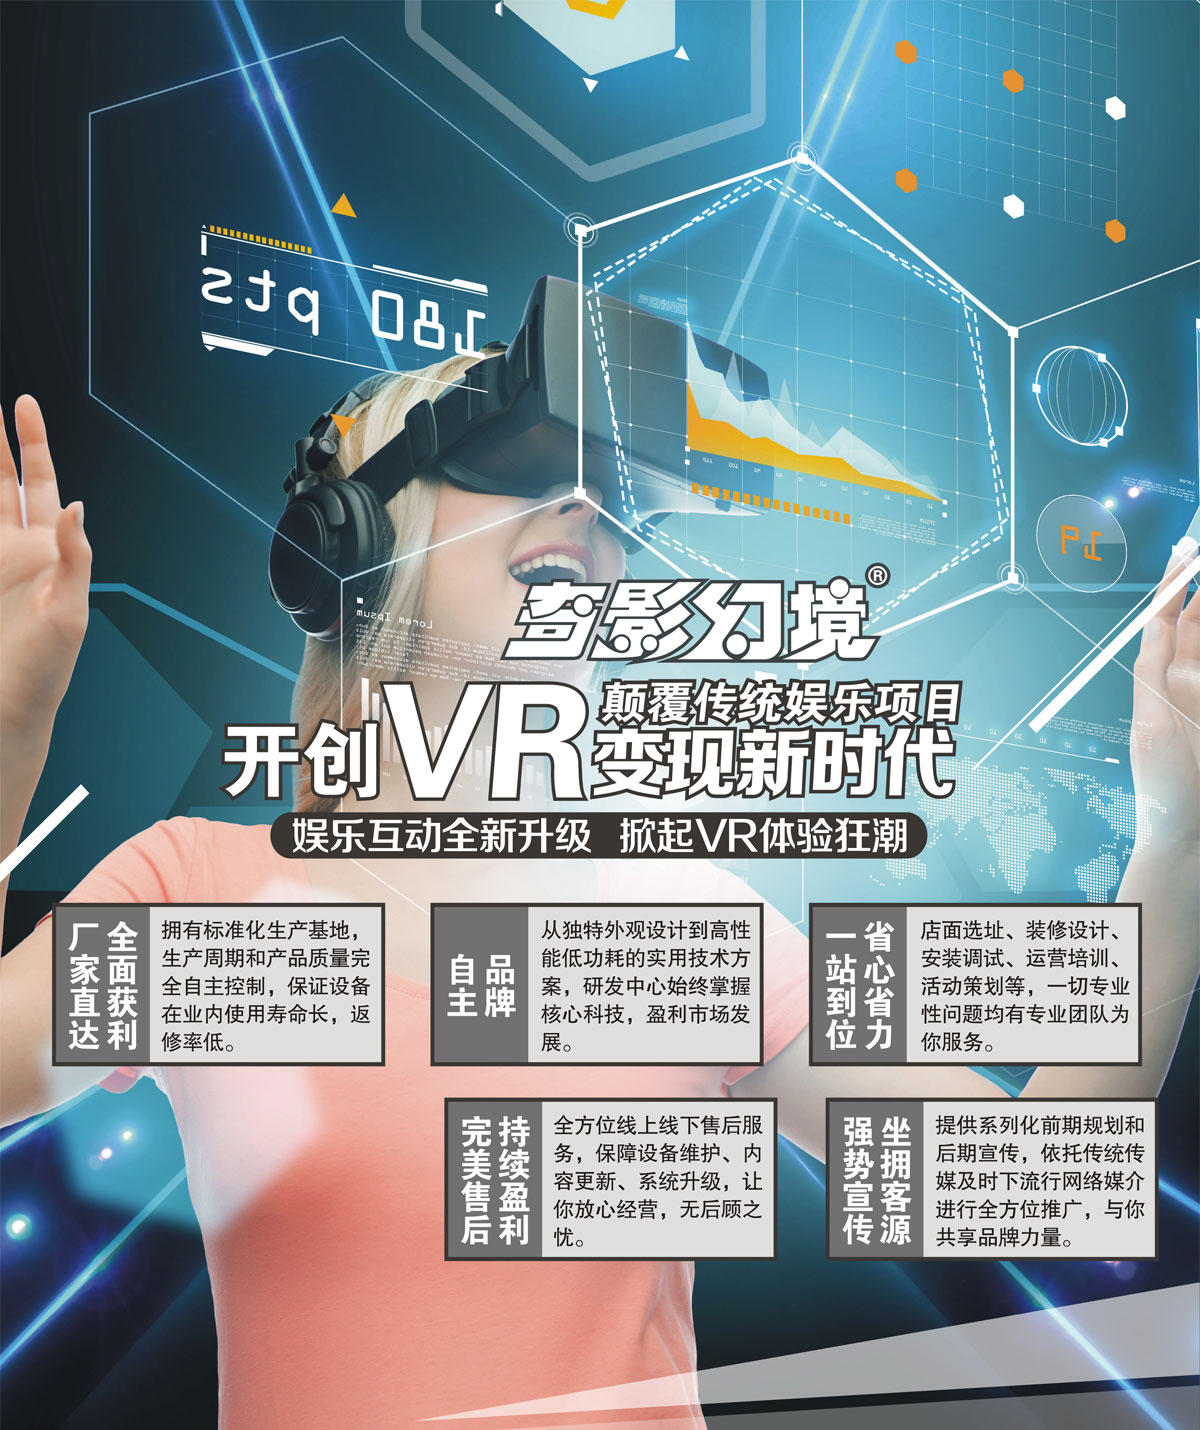 模拟安全开创VR变现新时代颠覆传统娱乐项目.jpg